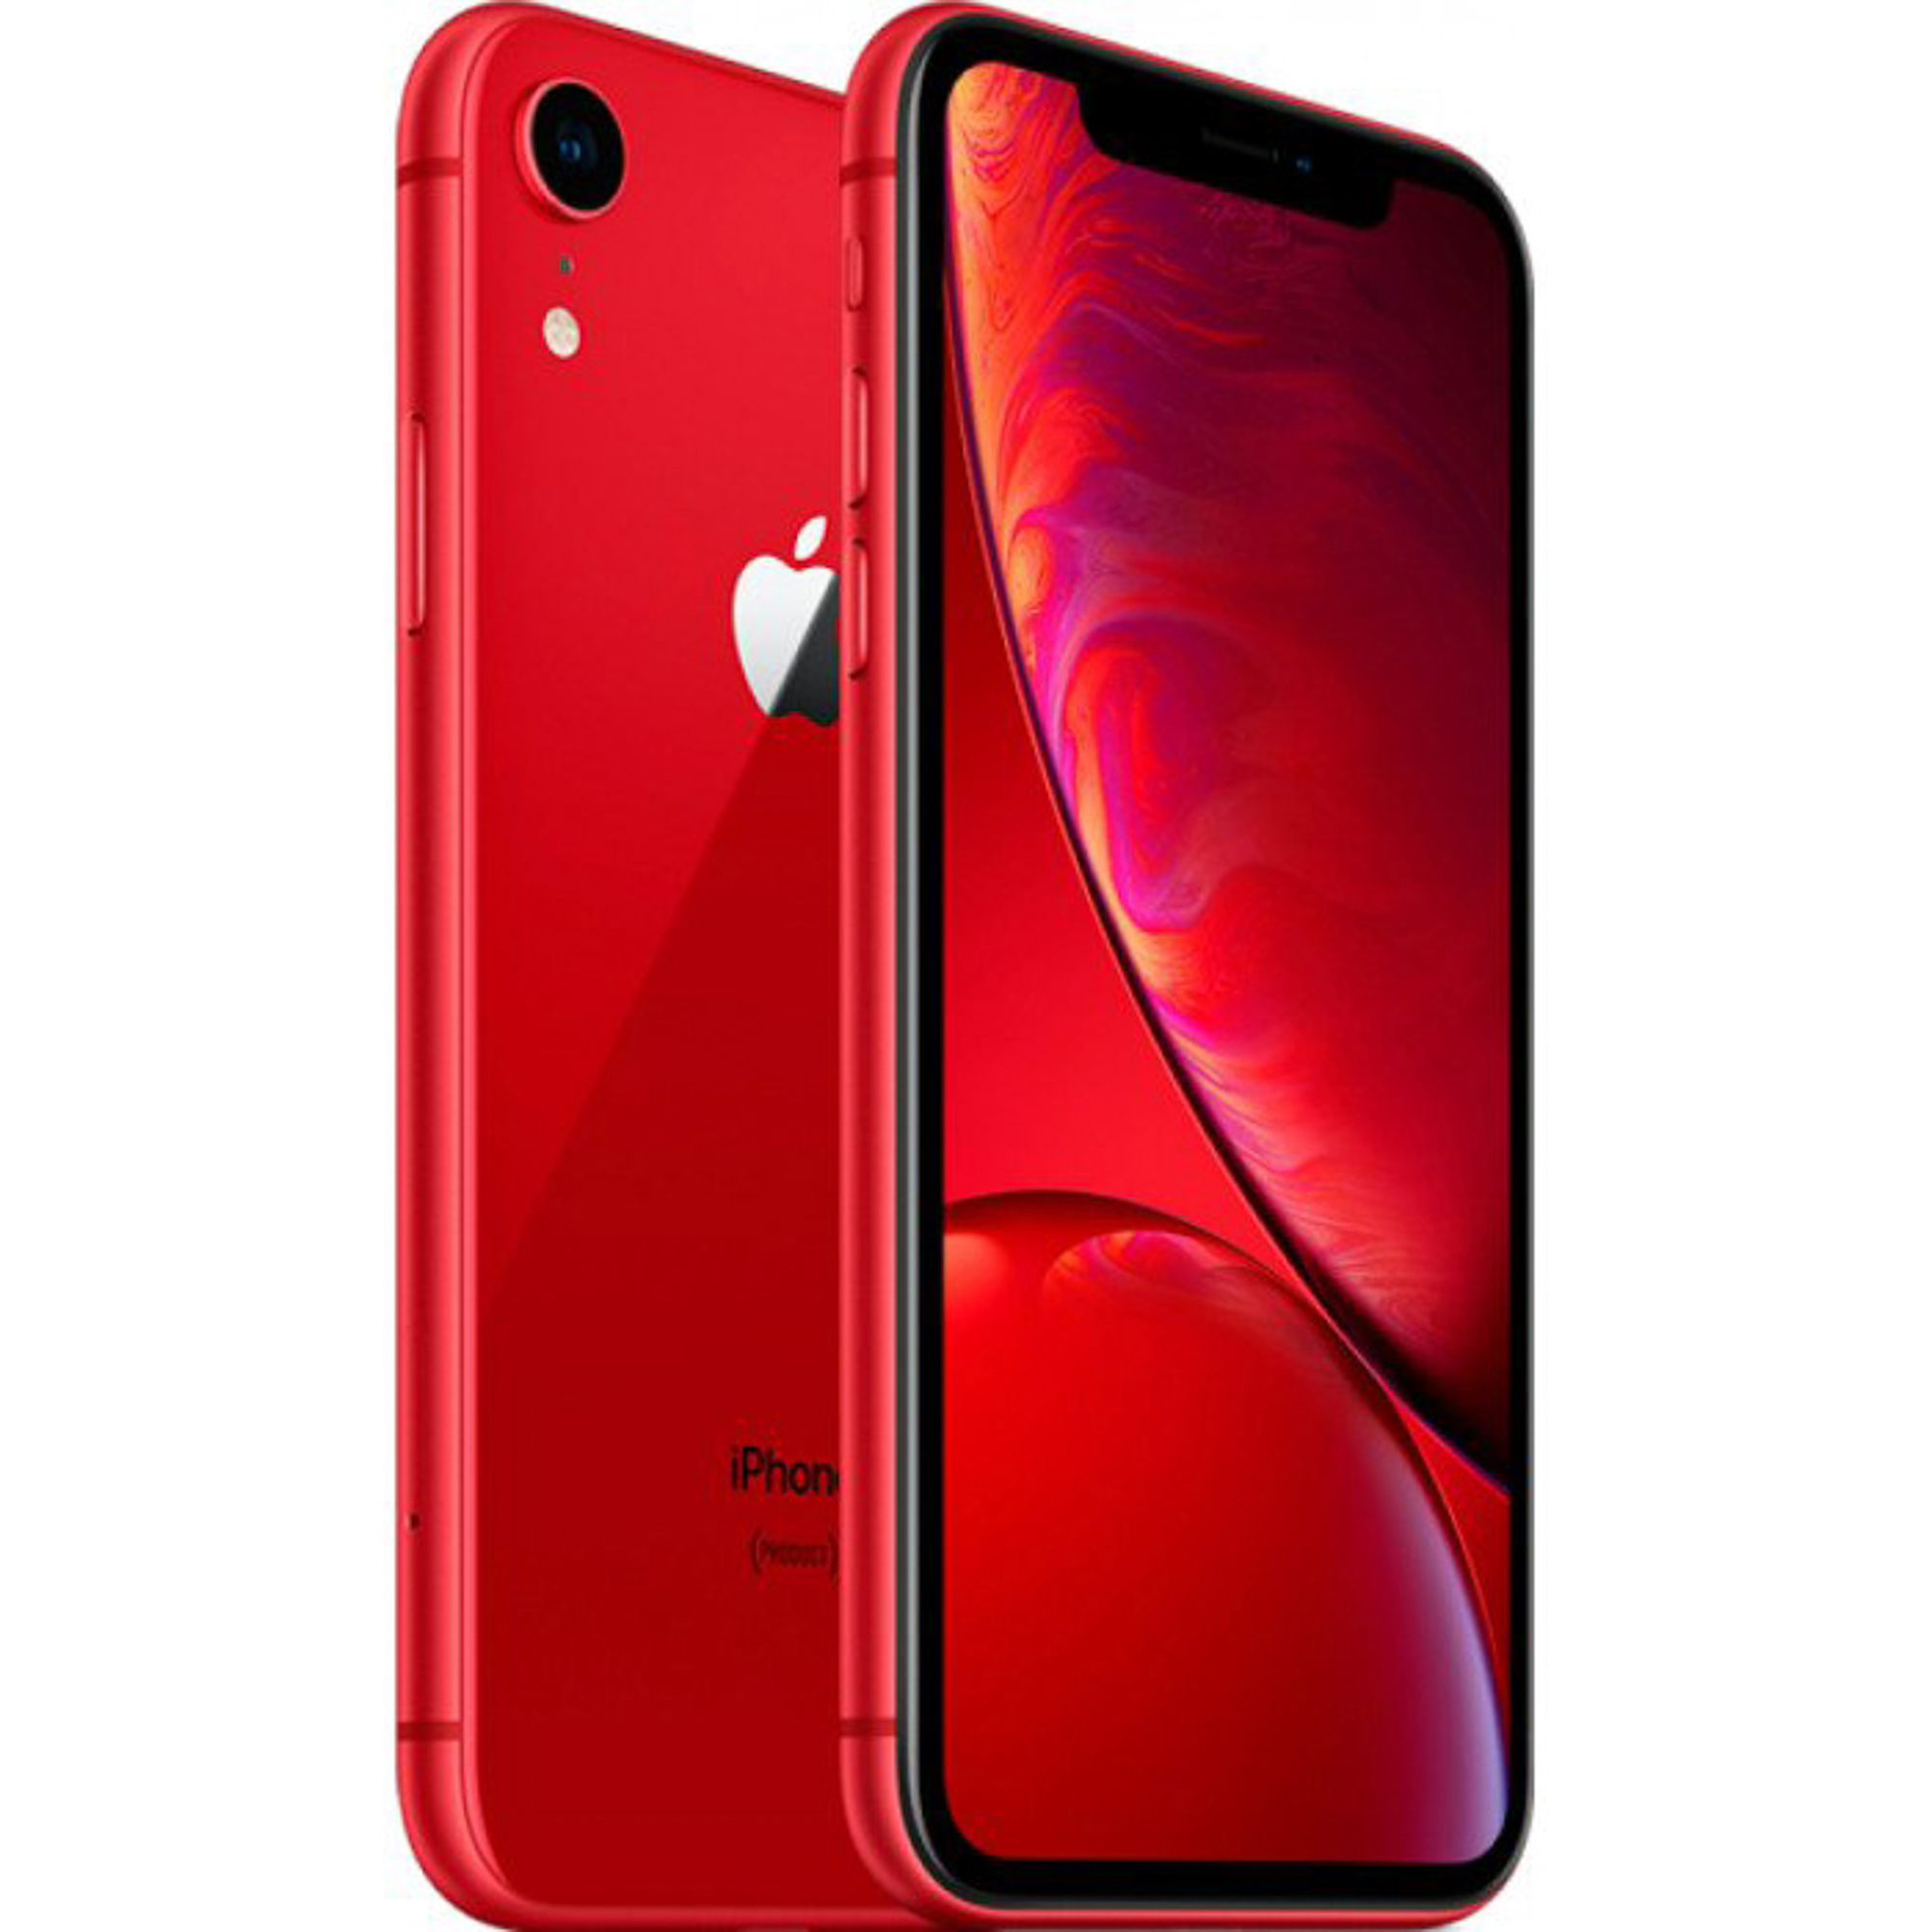 Смартфон Apple iPhone XR 64Gb Red, цвет красный MRY62RU/A A12 Bionic - фото 5